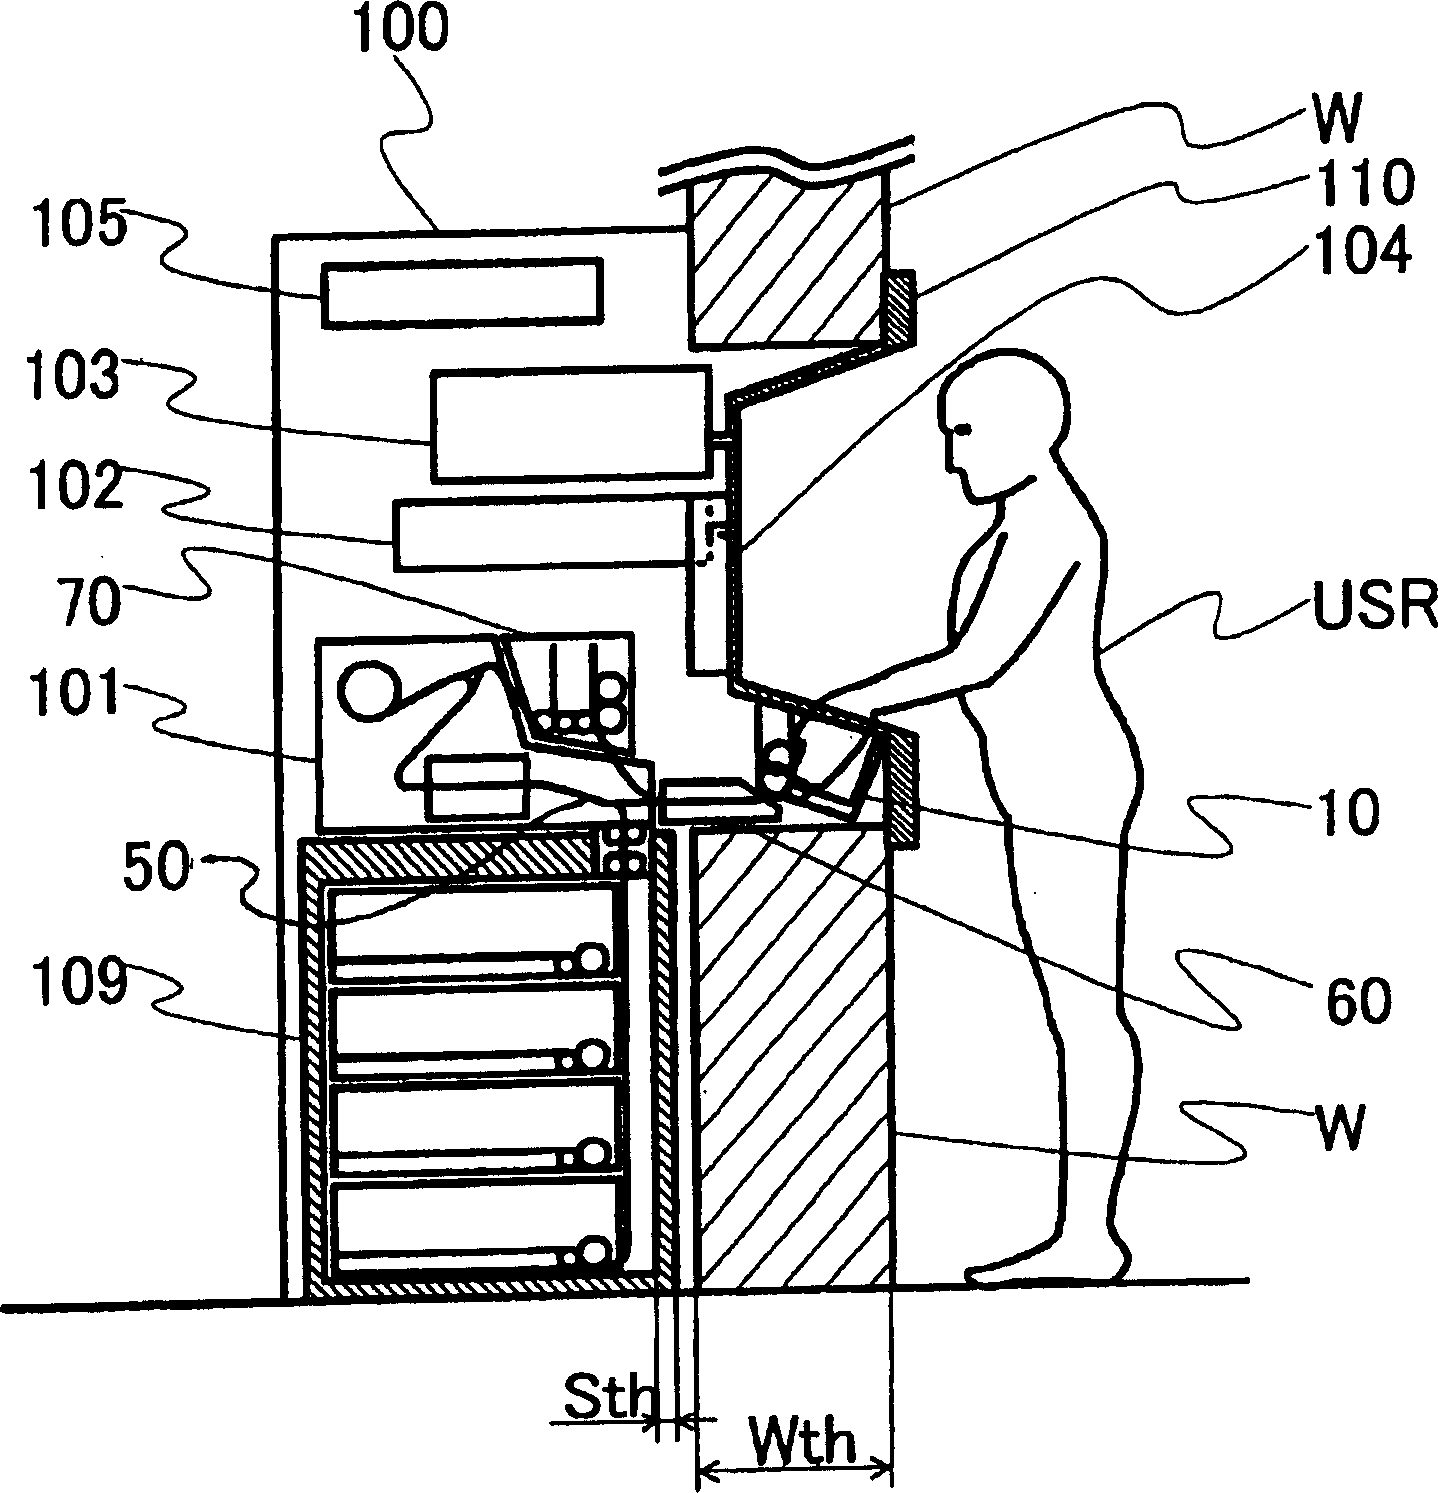 Sheet handling apparatus